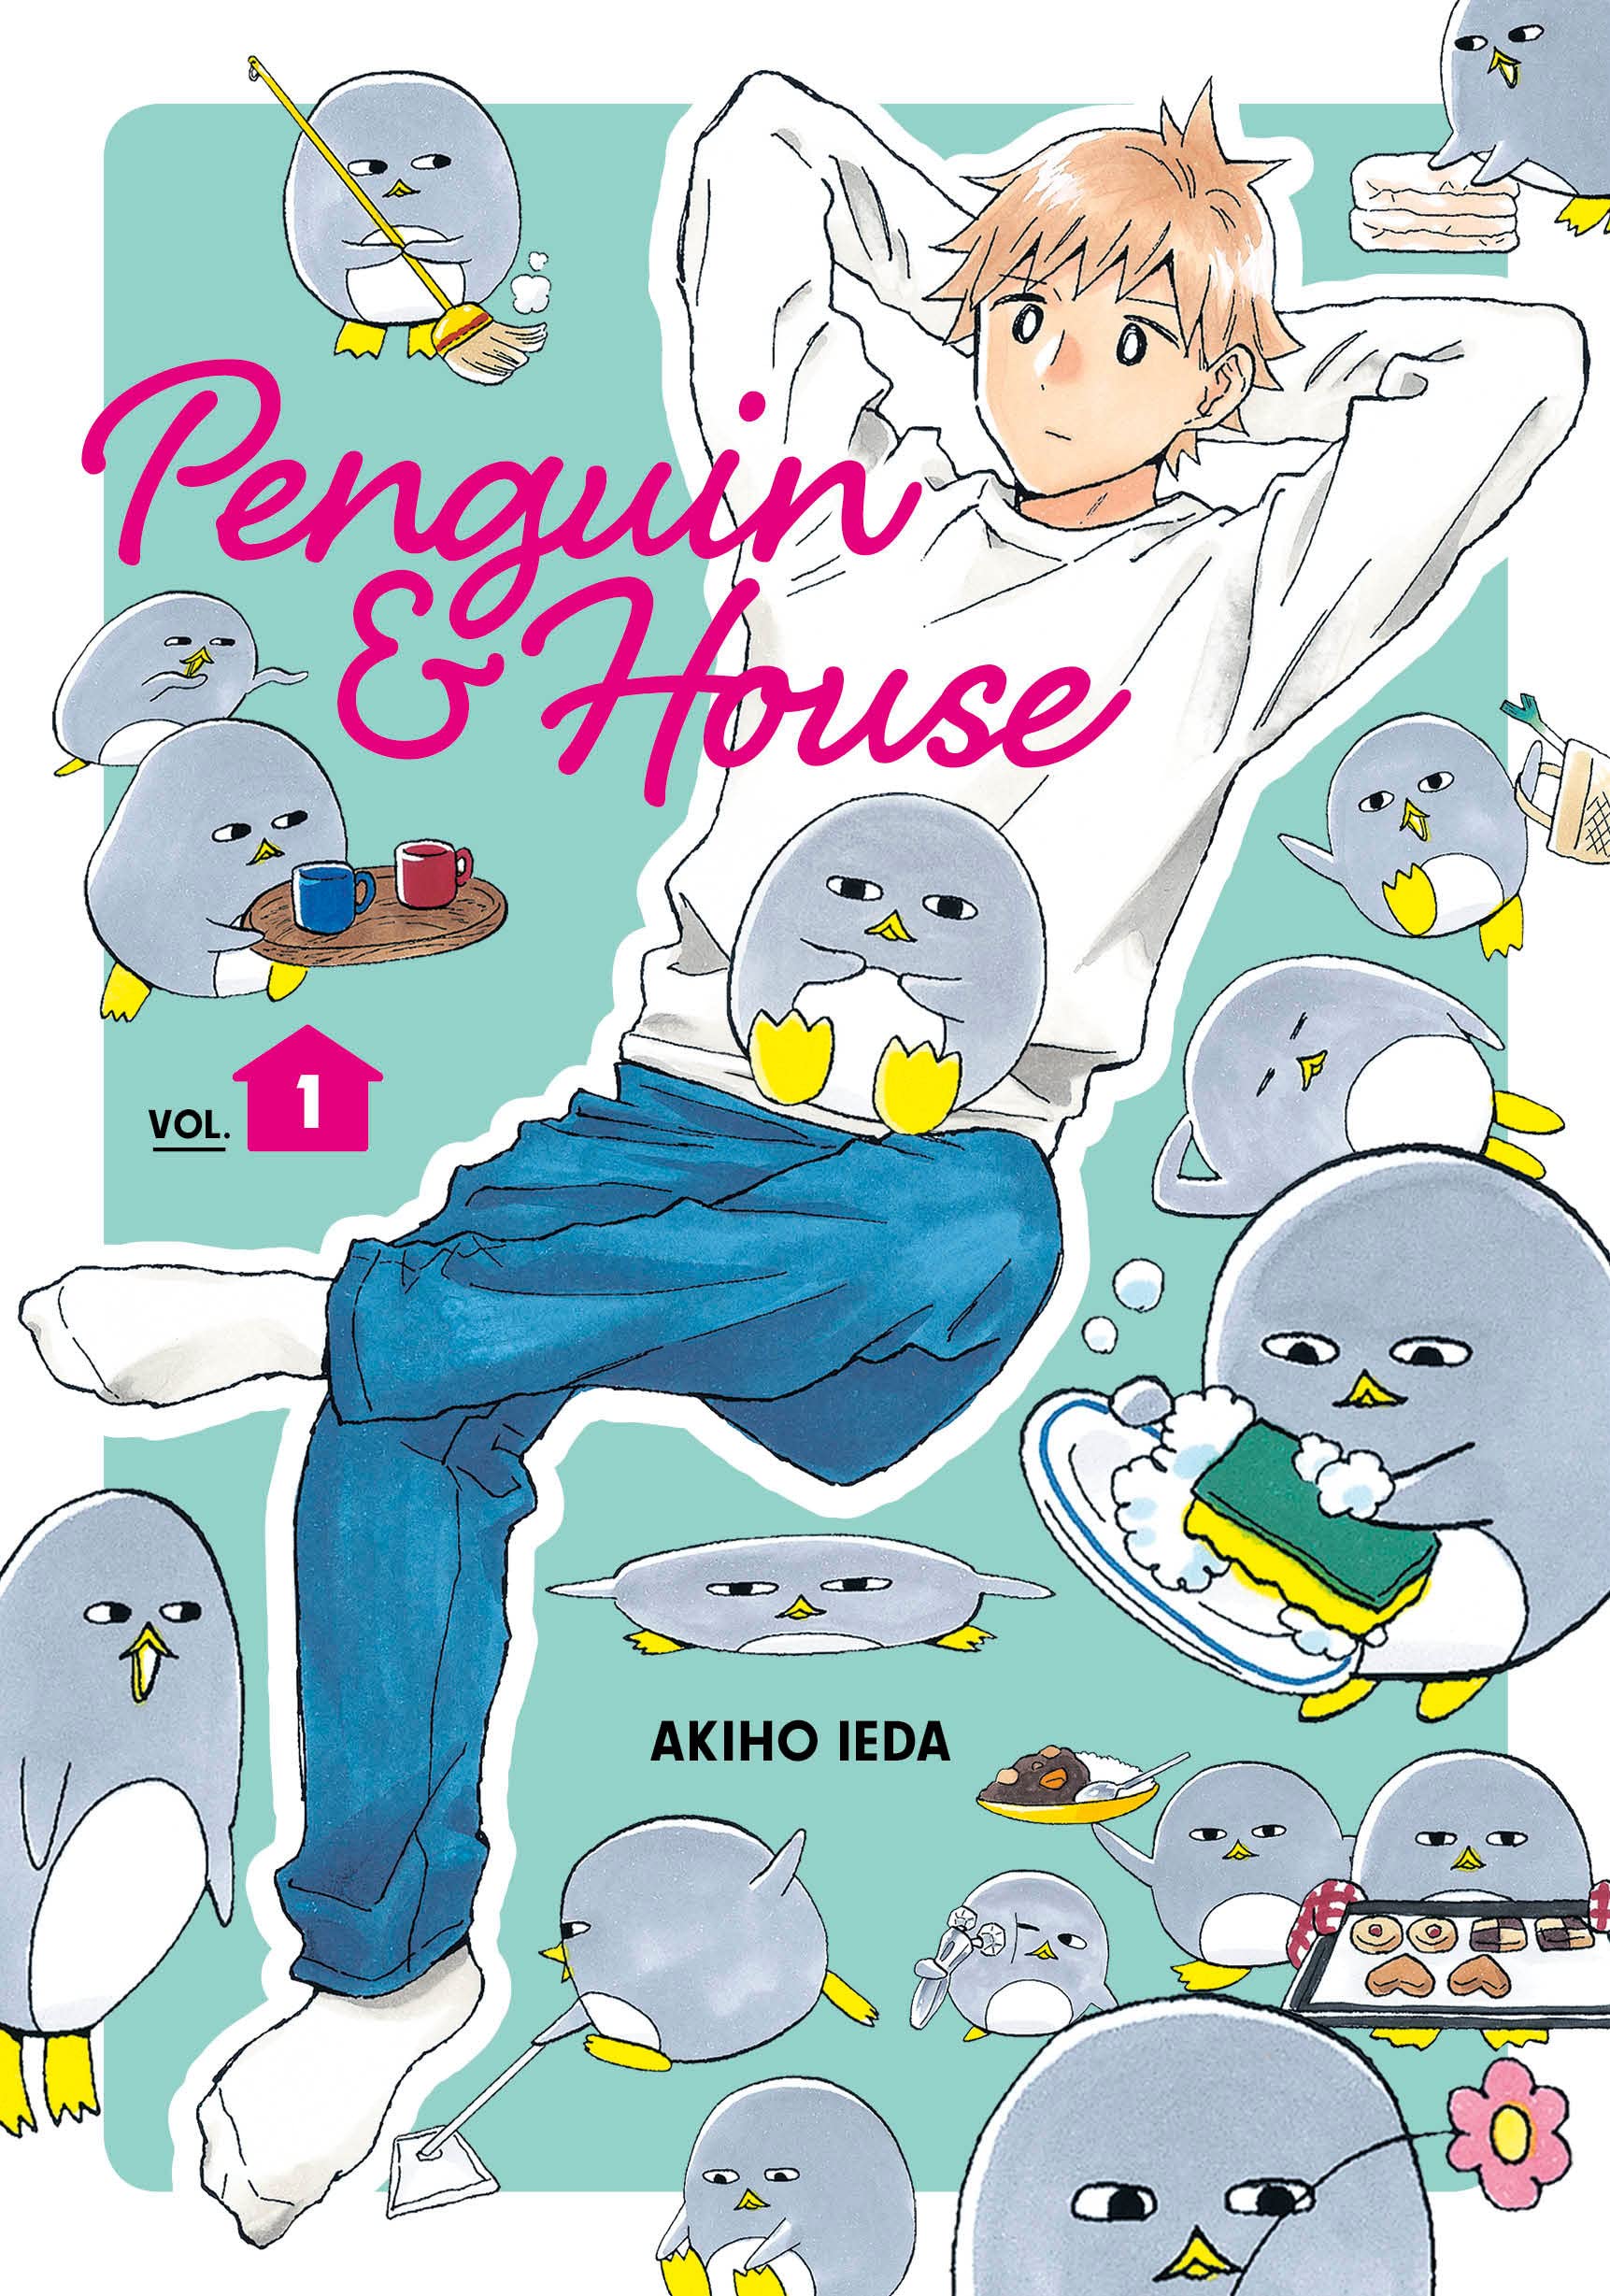 Penguin & House Vol. 01